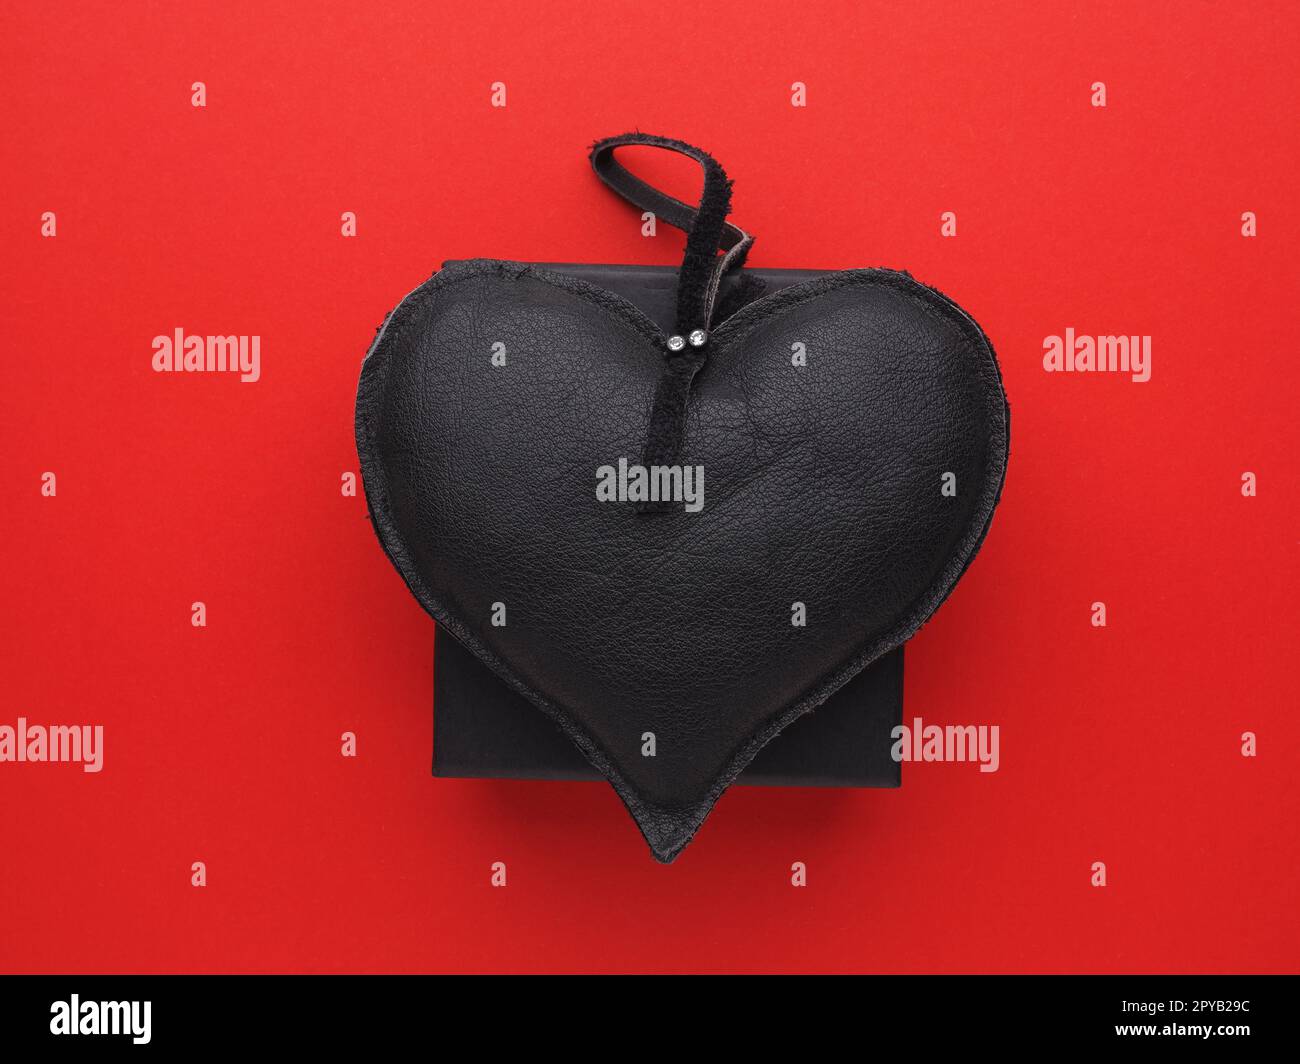 Coeur en cuir noir sur une boîte cadeau noire sur fond rouge, Saint Valentin ou anniversaire Banque D'Images